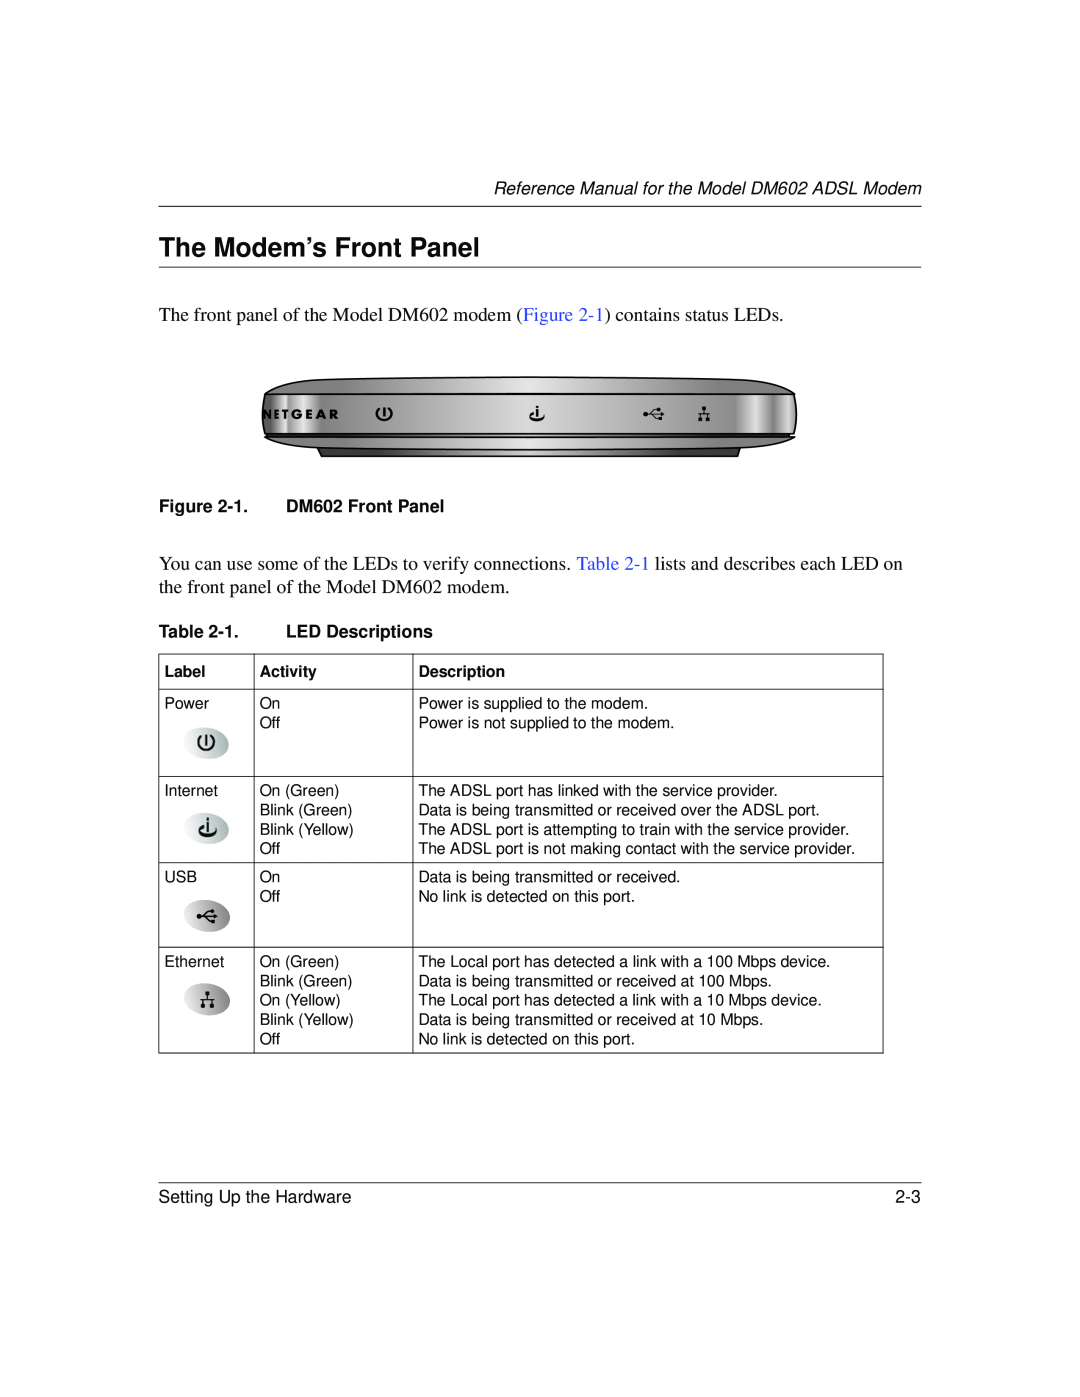 NETGEAR manual The Modem’s Front Panel, 1. DM602 Front Panel, LED Descriptions 